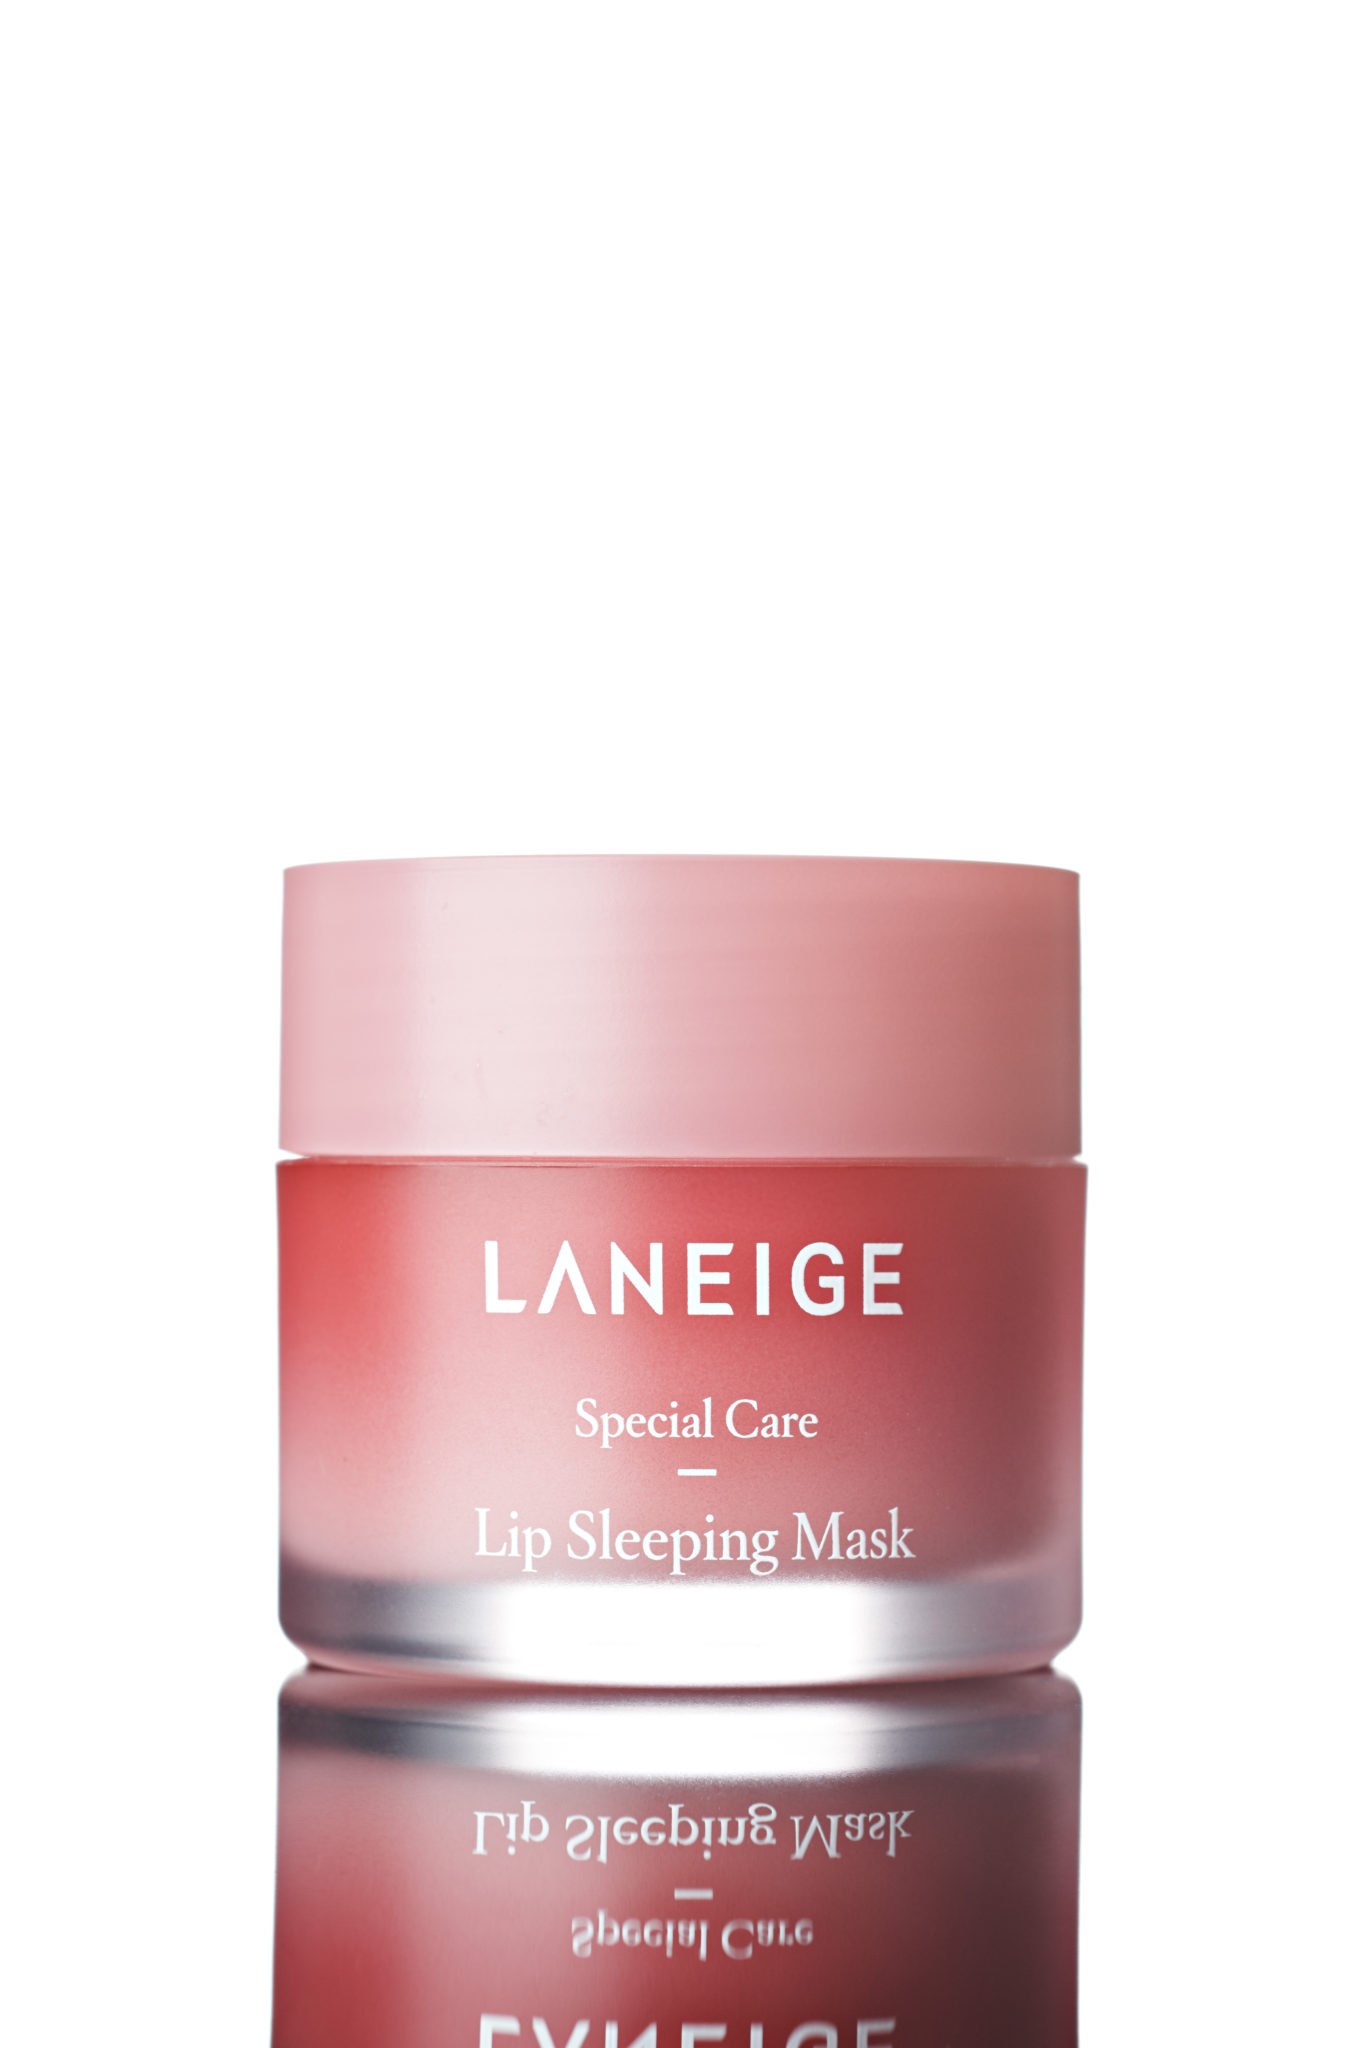 a pink jar of Laneige water sleeping mask shot in studio